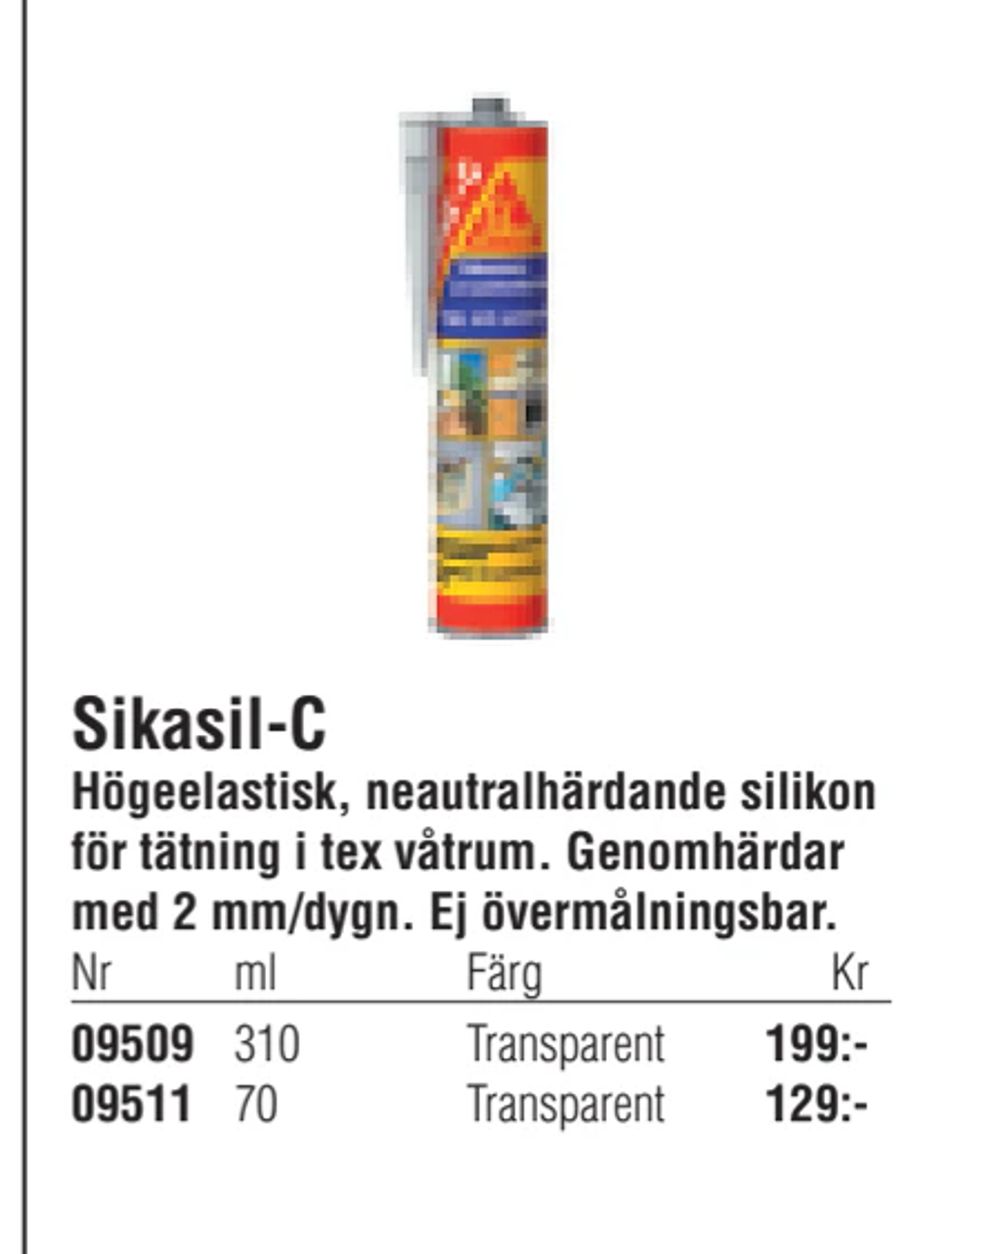 Erbjudanden på Sikasil-C från Erlandsons Brygga för 129 kr